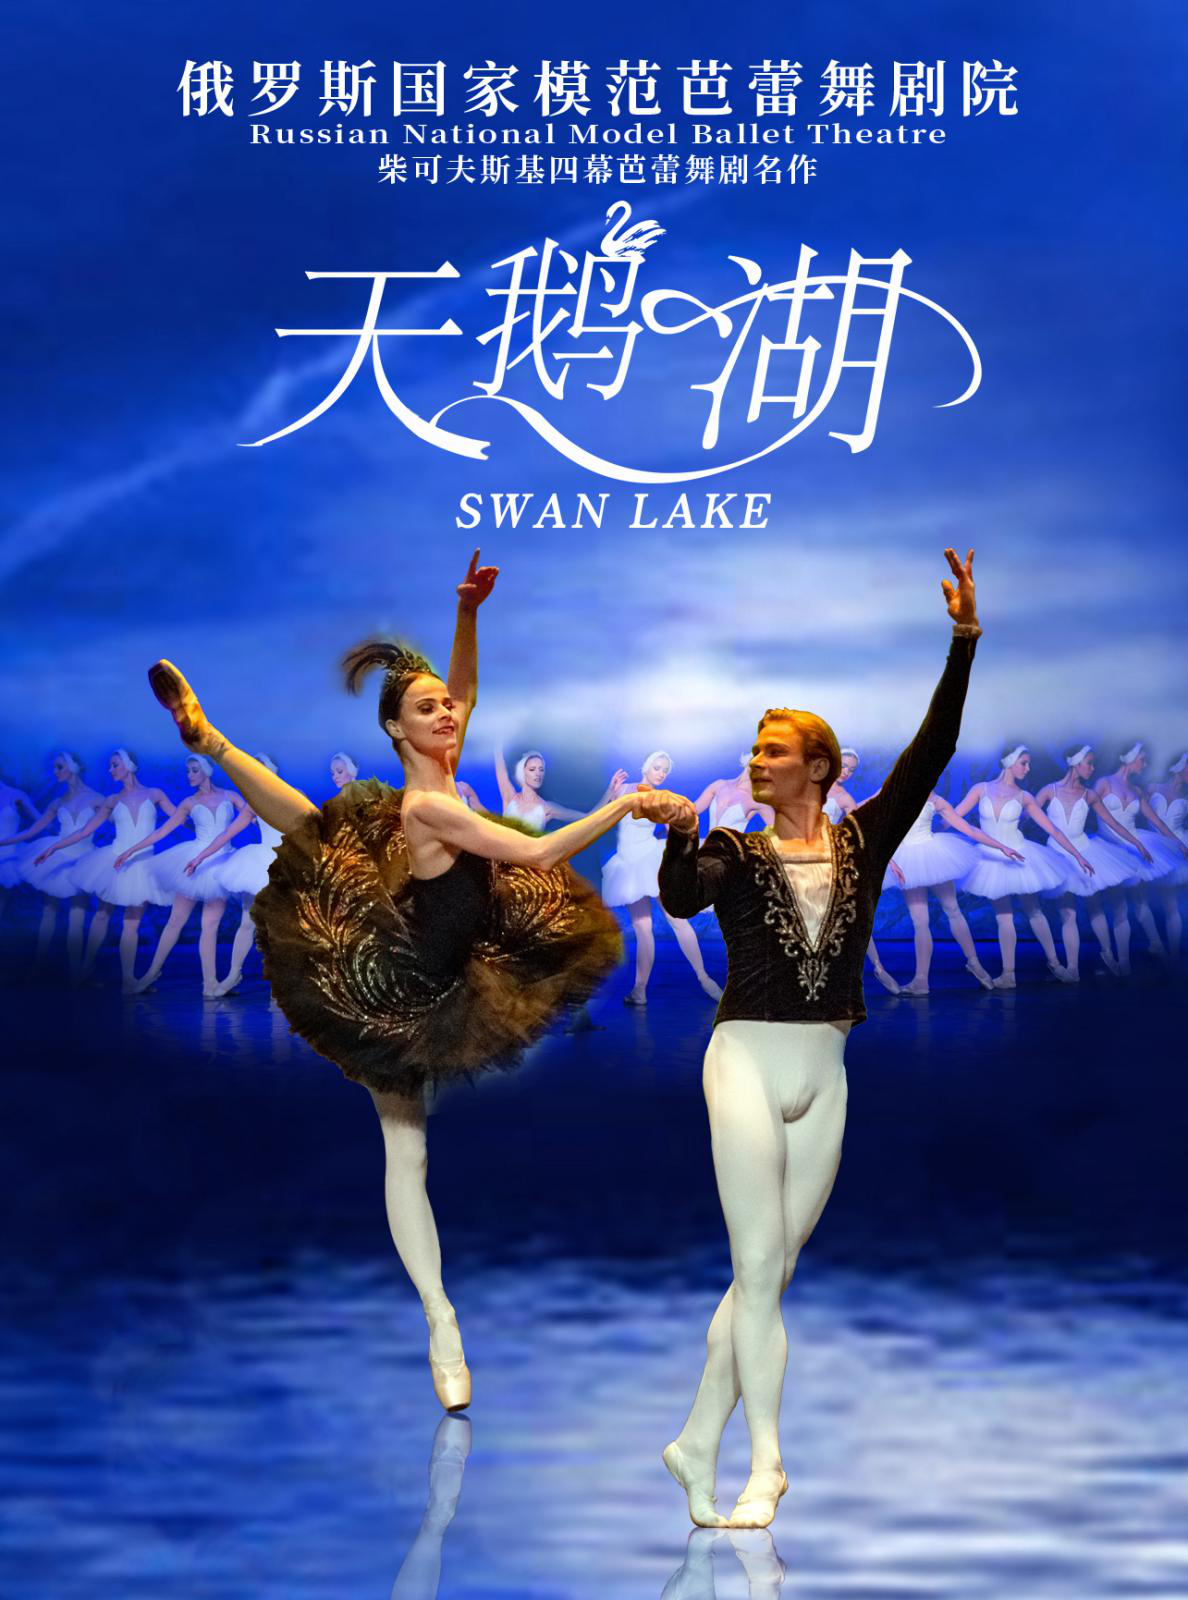 俄罗斯国家模范芭蕾舞剧院新年芭蕾舞《天鹅湖》